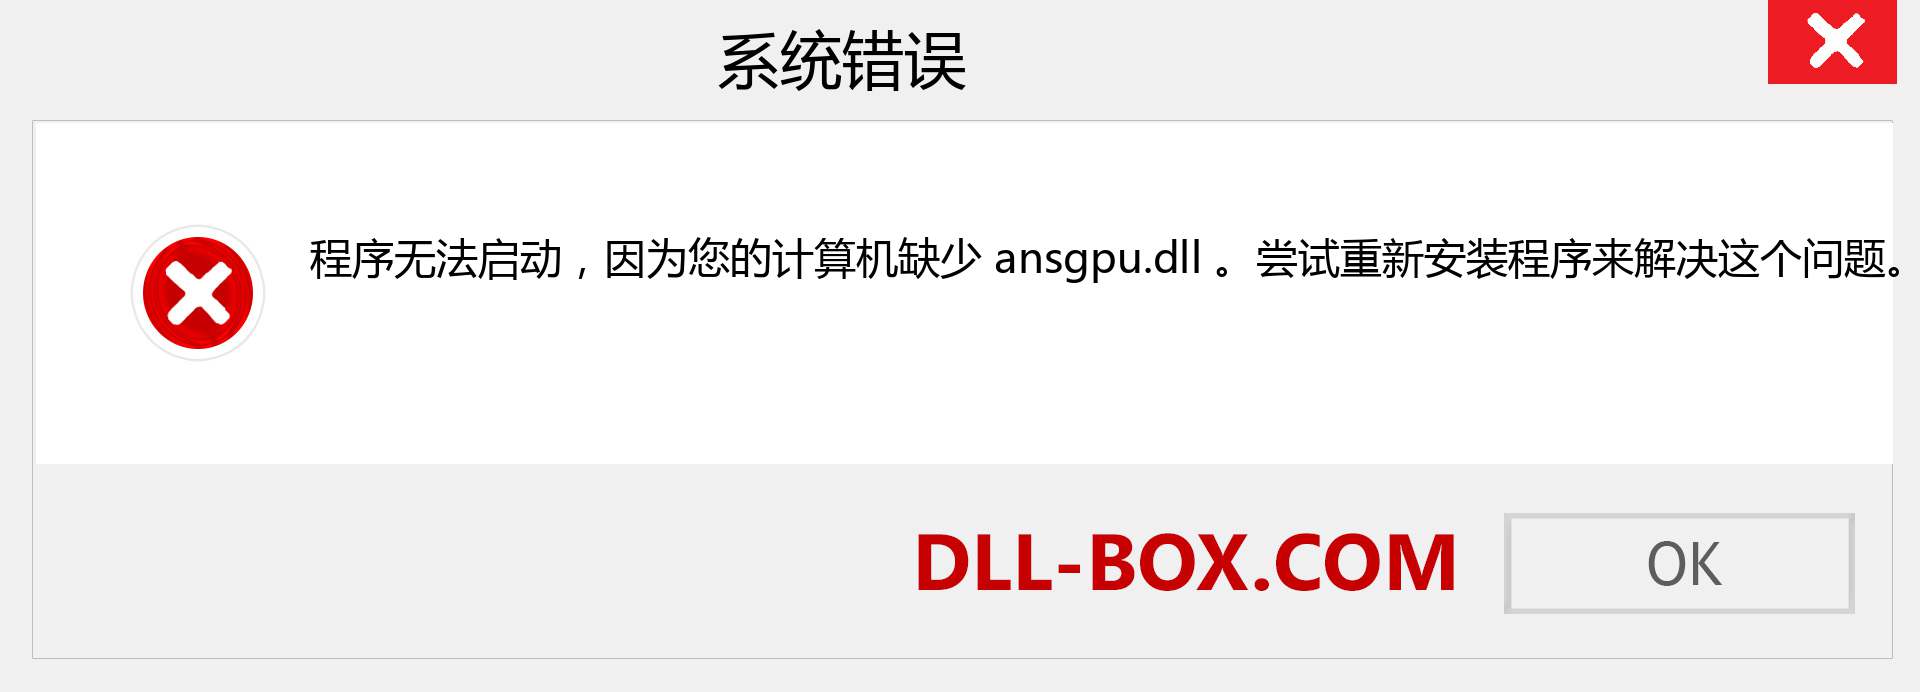 ansgpu.dll 文件丢失？。 适用于 Windows 7、8、10 的下载 - 修复 Windows、照片、图像上的 ansgpu dll 丢失错误